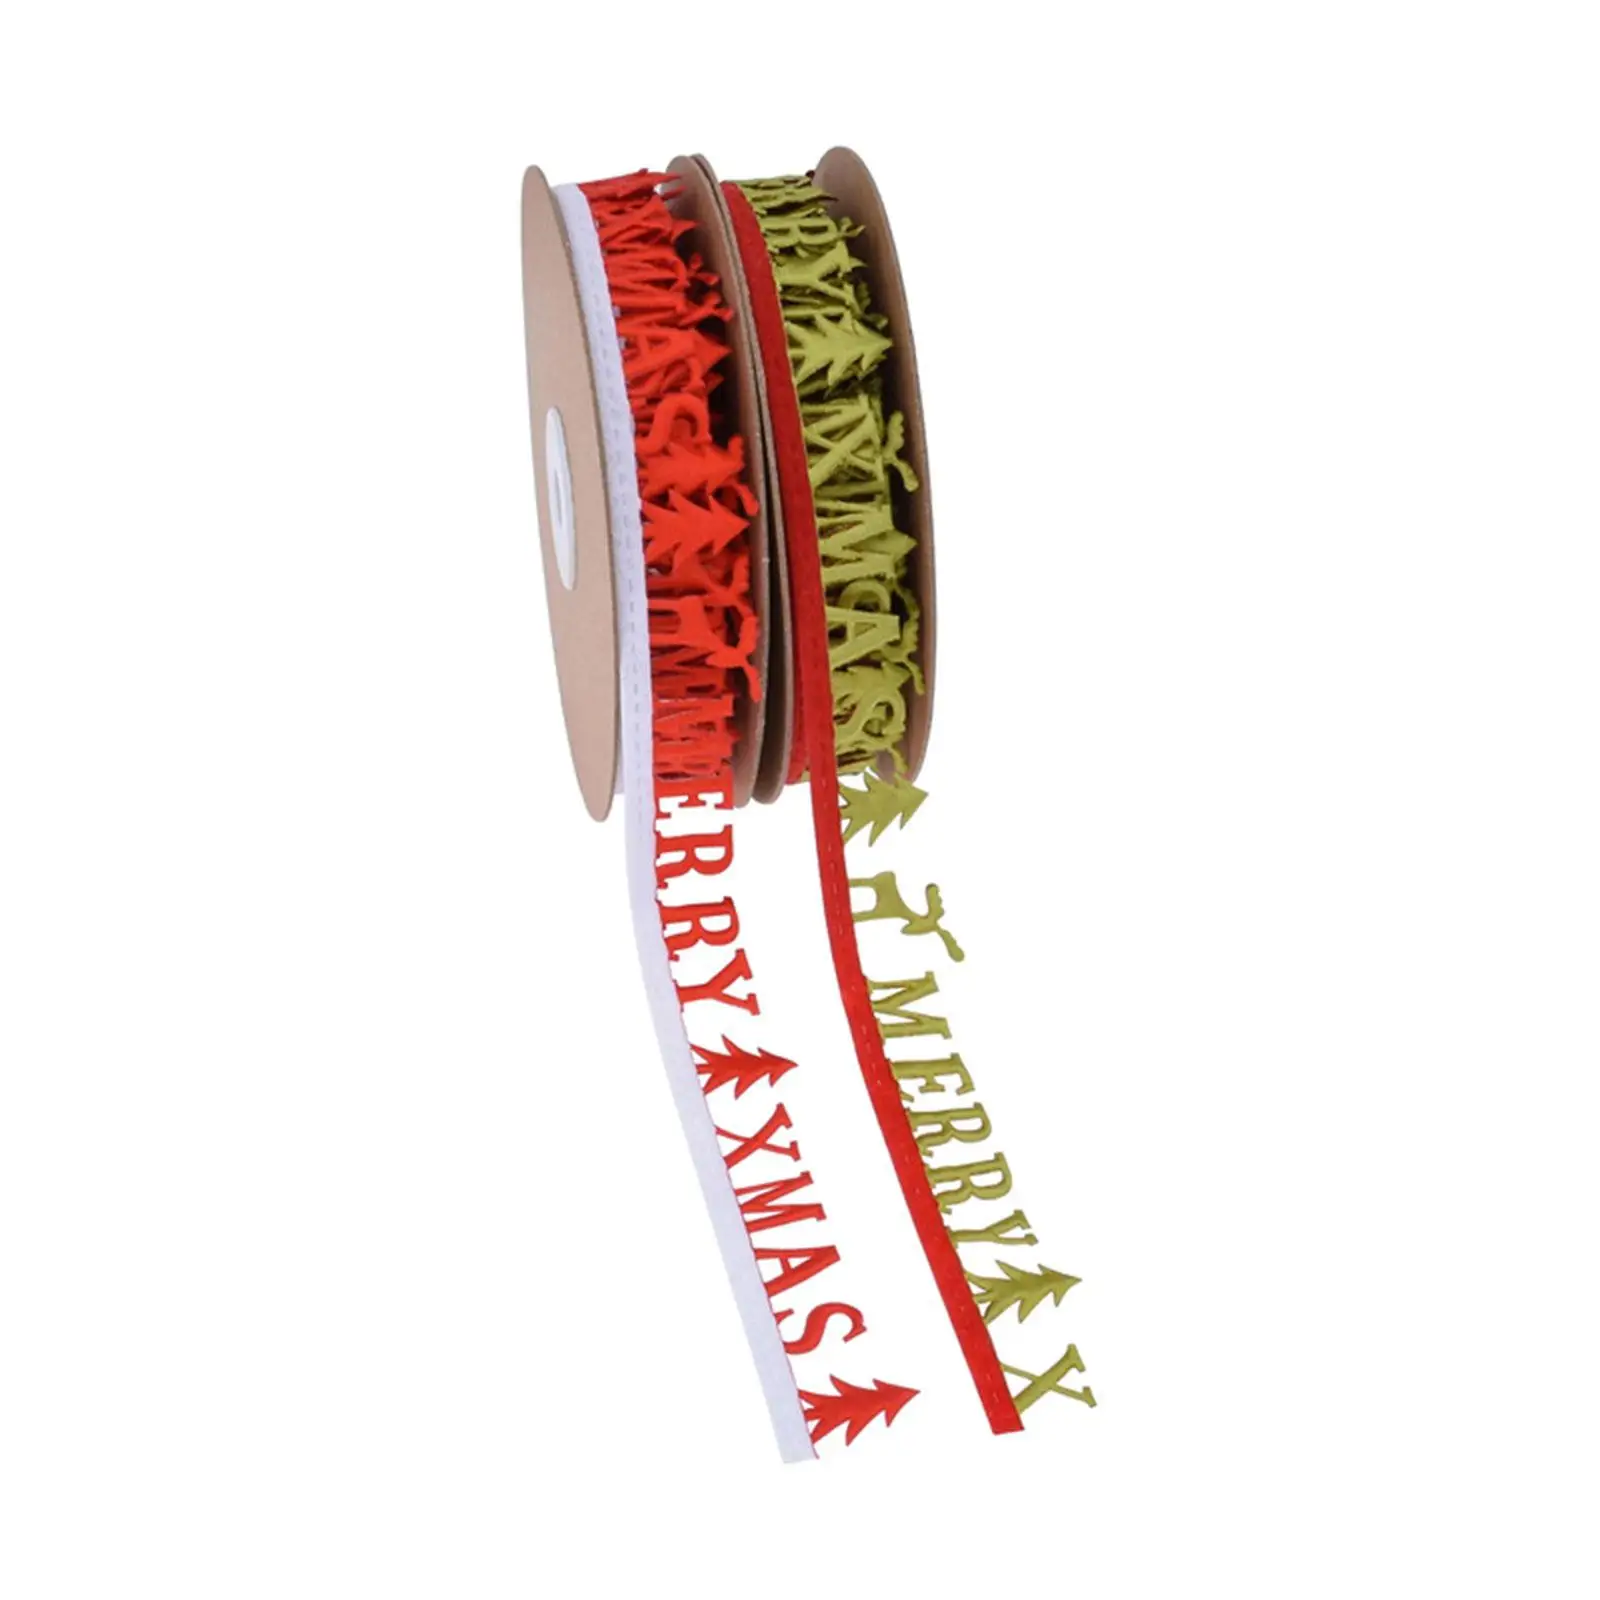 Christmas Ribbon Xmas Ribbons, Decorative Ribbon Gift Wrapping Ribbon 10 Yard for Holiday Sewing Craft Christmas Tree Garland